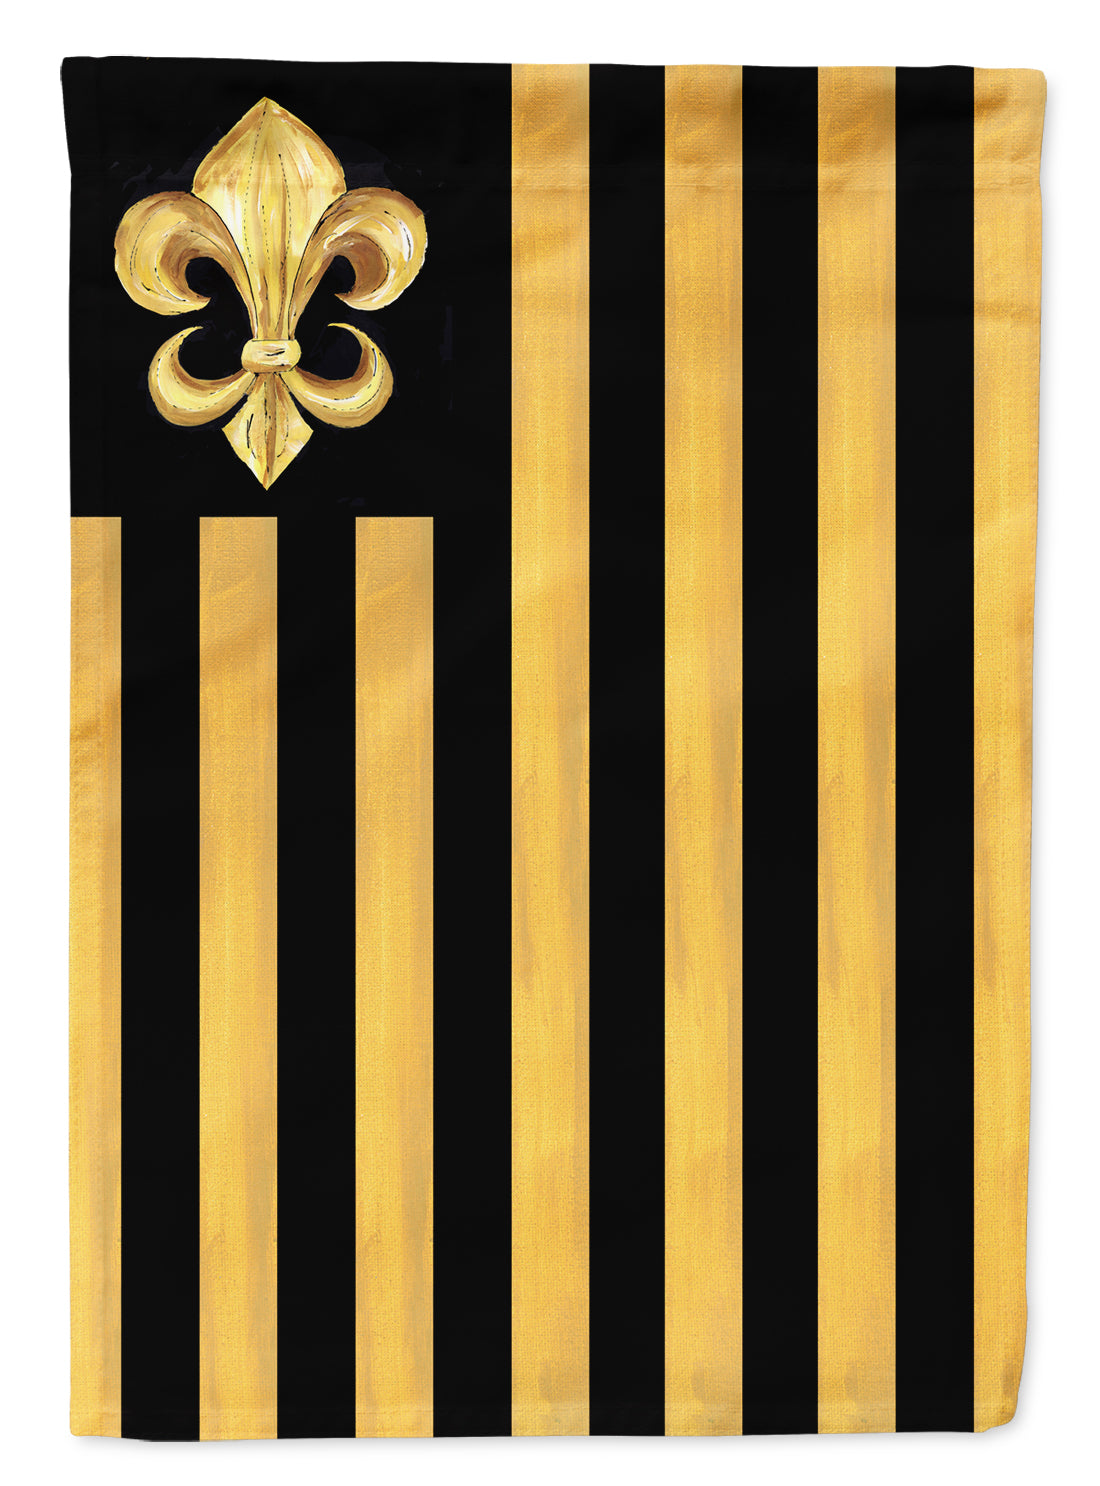 Black and Gold Fleur de lis Nation Flag Canvas House Size  the-store.com.